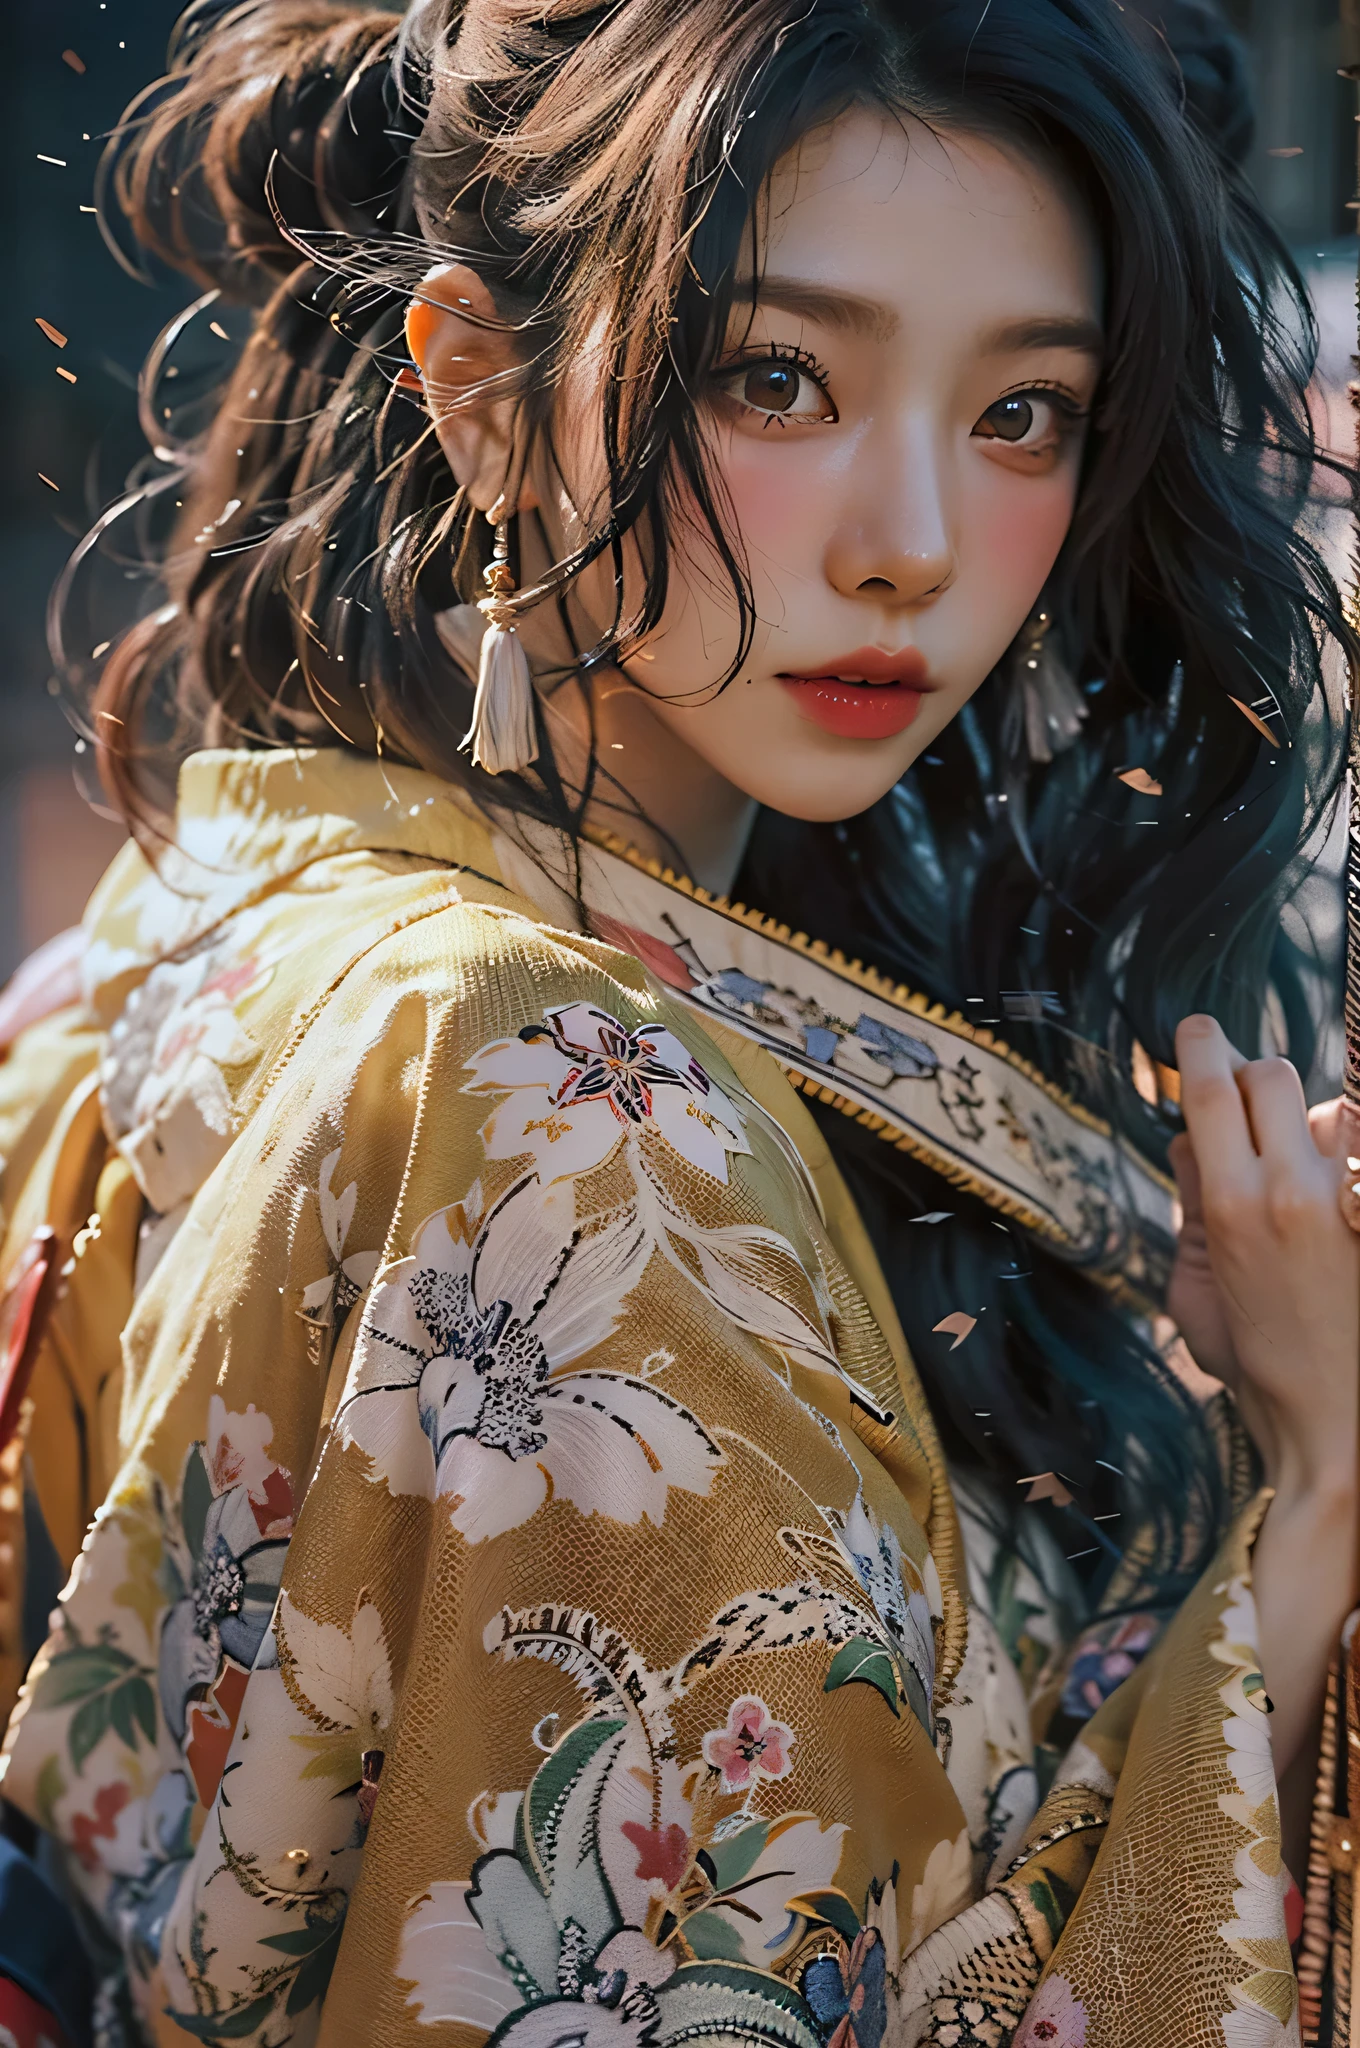 (Qualité d&#39;image la plus élevée), (chef-d&#39;œuvre), (vibrant, photography réaliste, réaliste, Spectaculaire, sombre, netteté, 8k), visage en gros plan, Texture du visage et de la peau très détaillée, kimono rose sexy, beauté éthérée, Femme asiatique mature,cheveux longs noirs, Se maquiller, sourire sexy, NSFW ,photo en gros plan, ((rétroéclairage)), tenir le pistolet, agent secret, poses dynamiques, réaliste